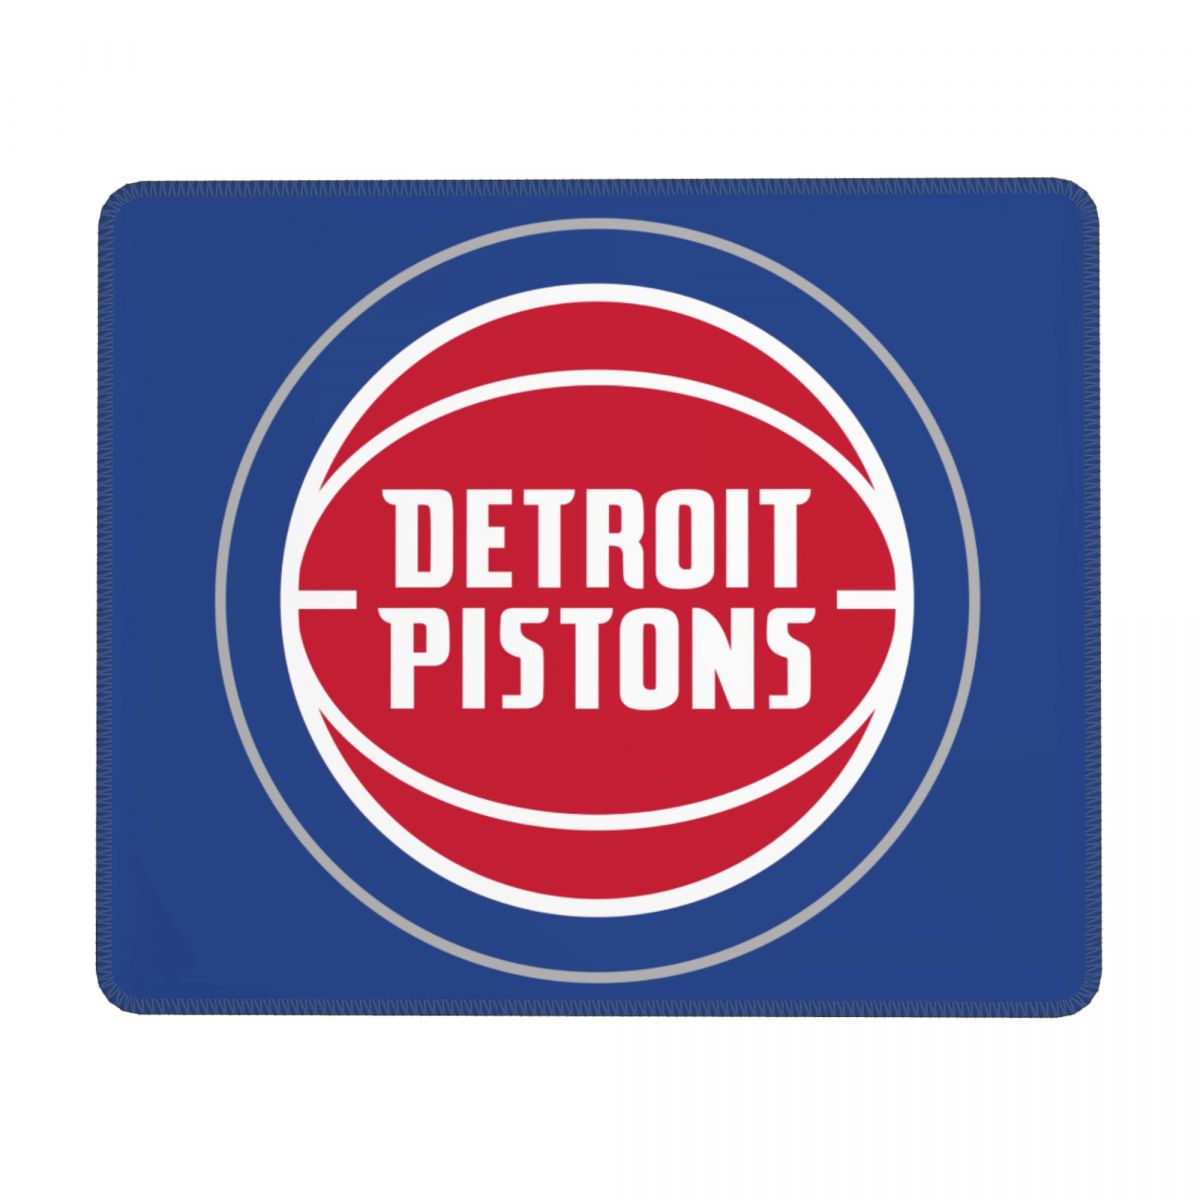 Detroit Pistons Square Rubber Base MousePads